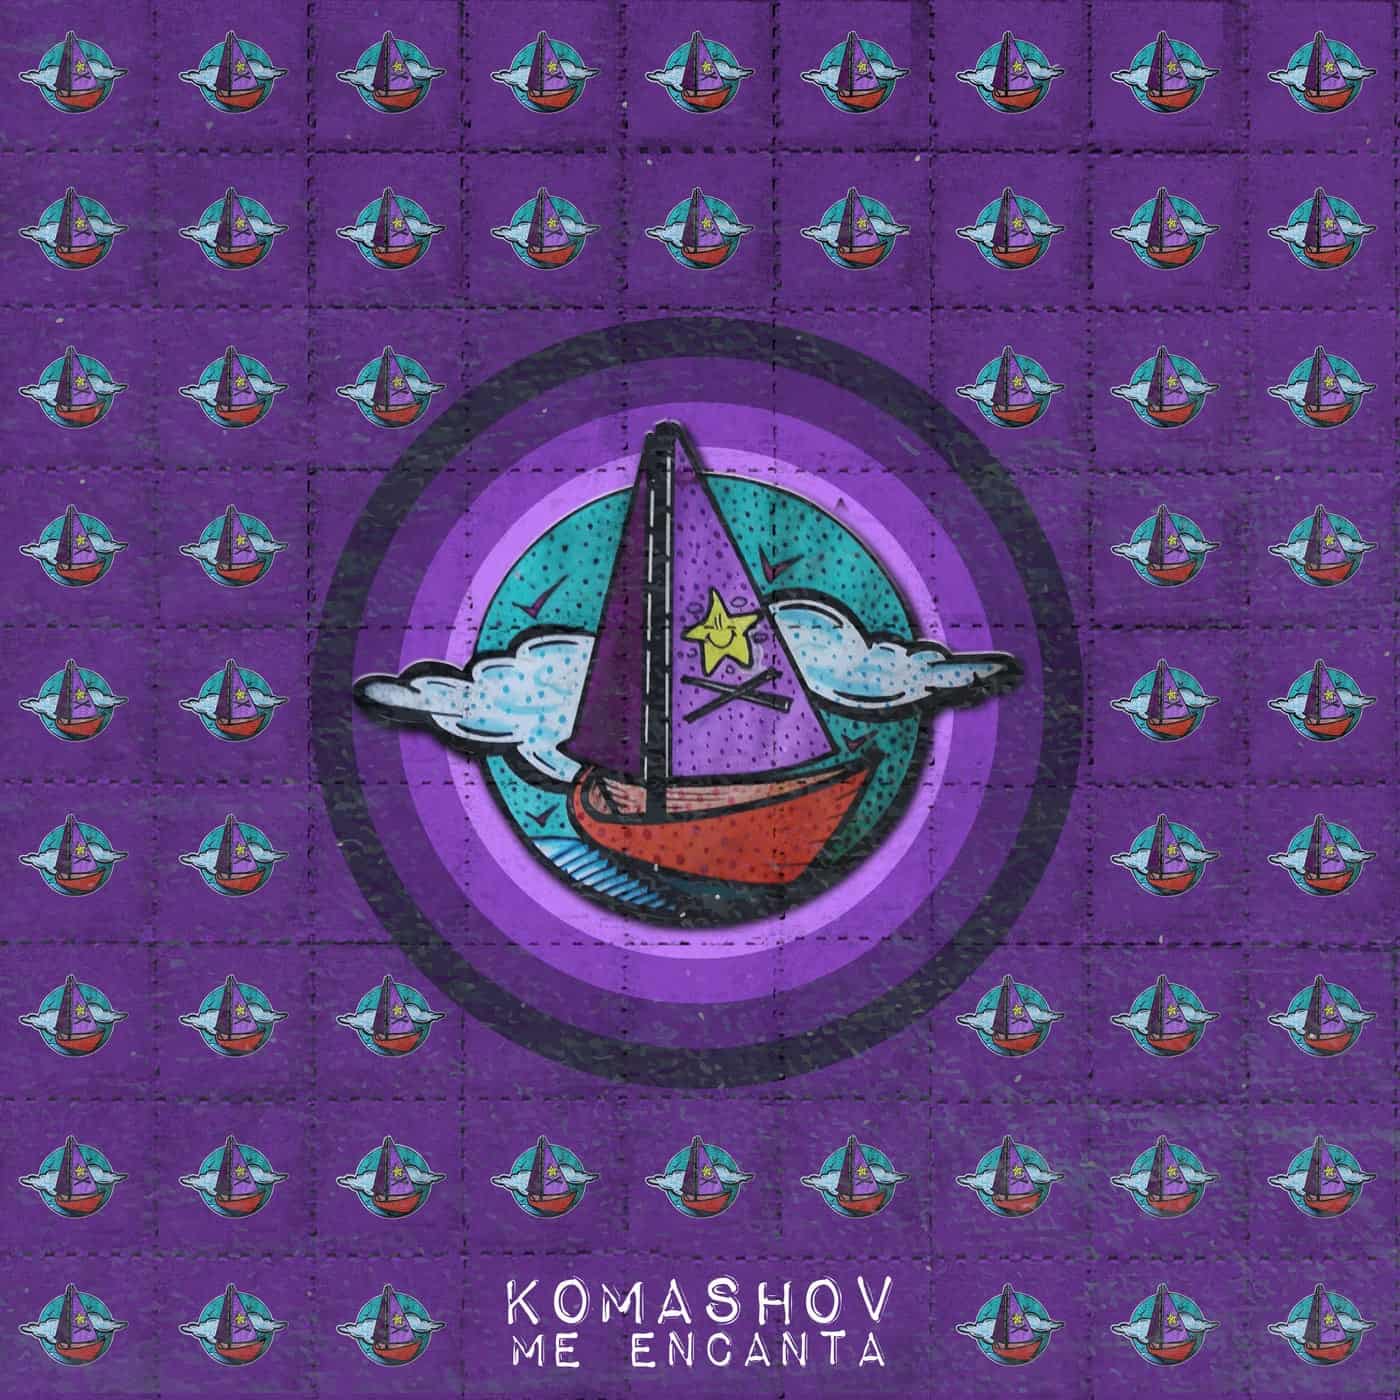 Download Komashov - Me Encanta on Electrobuzz